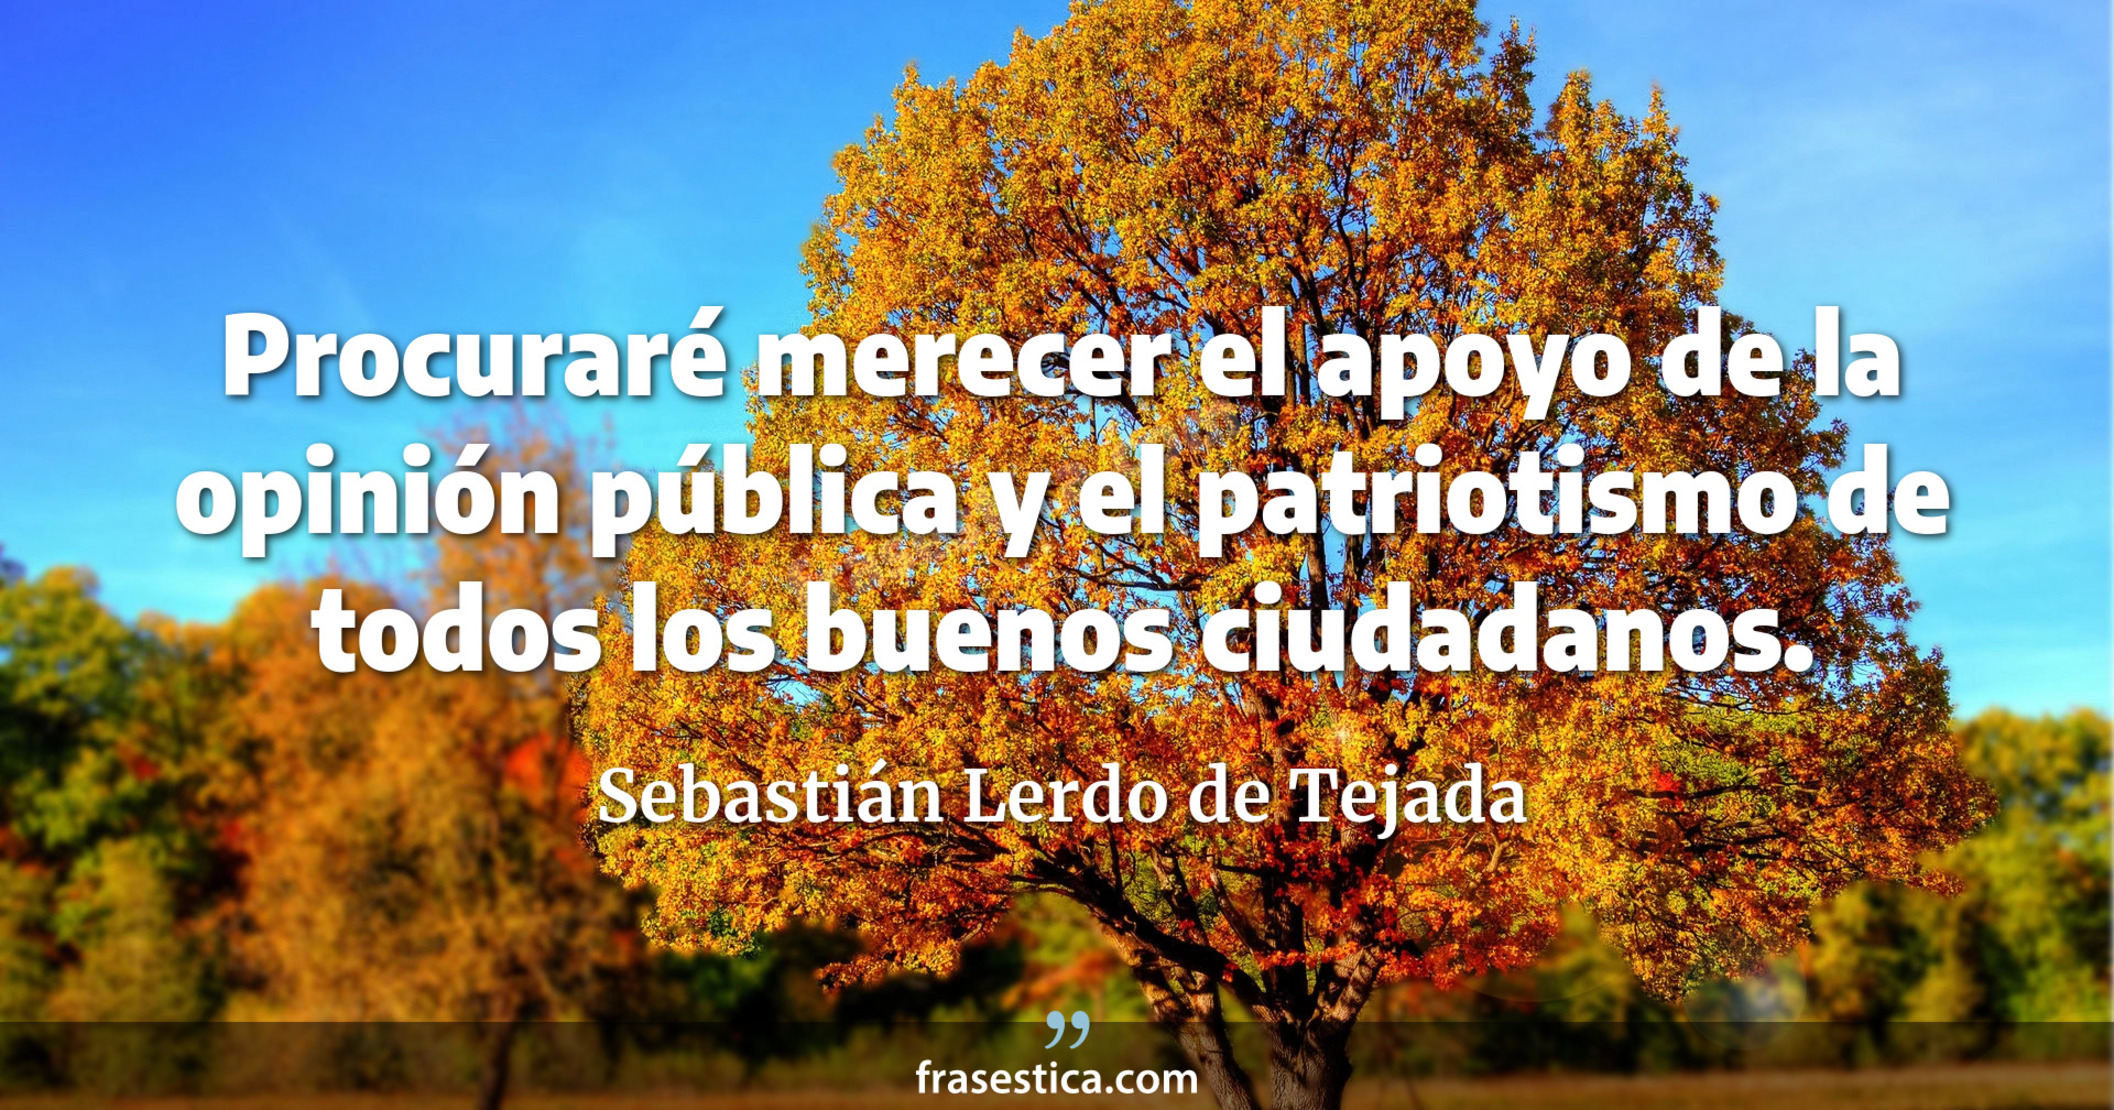 Procuraré merecer el apoyo de la opinión pública y el patriotismo de todos los buenos ciudadanos. - Sebastián Lerdo de Tejada